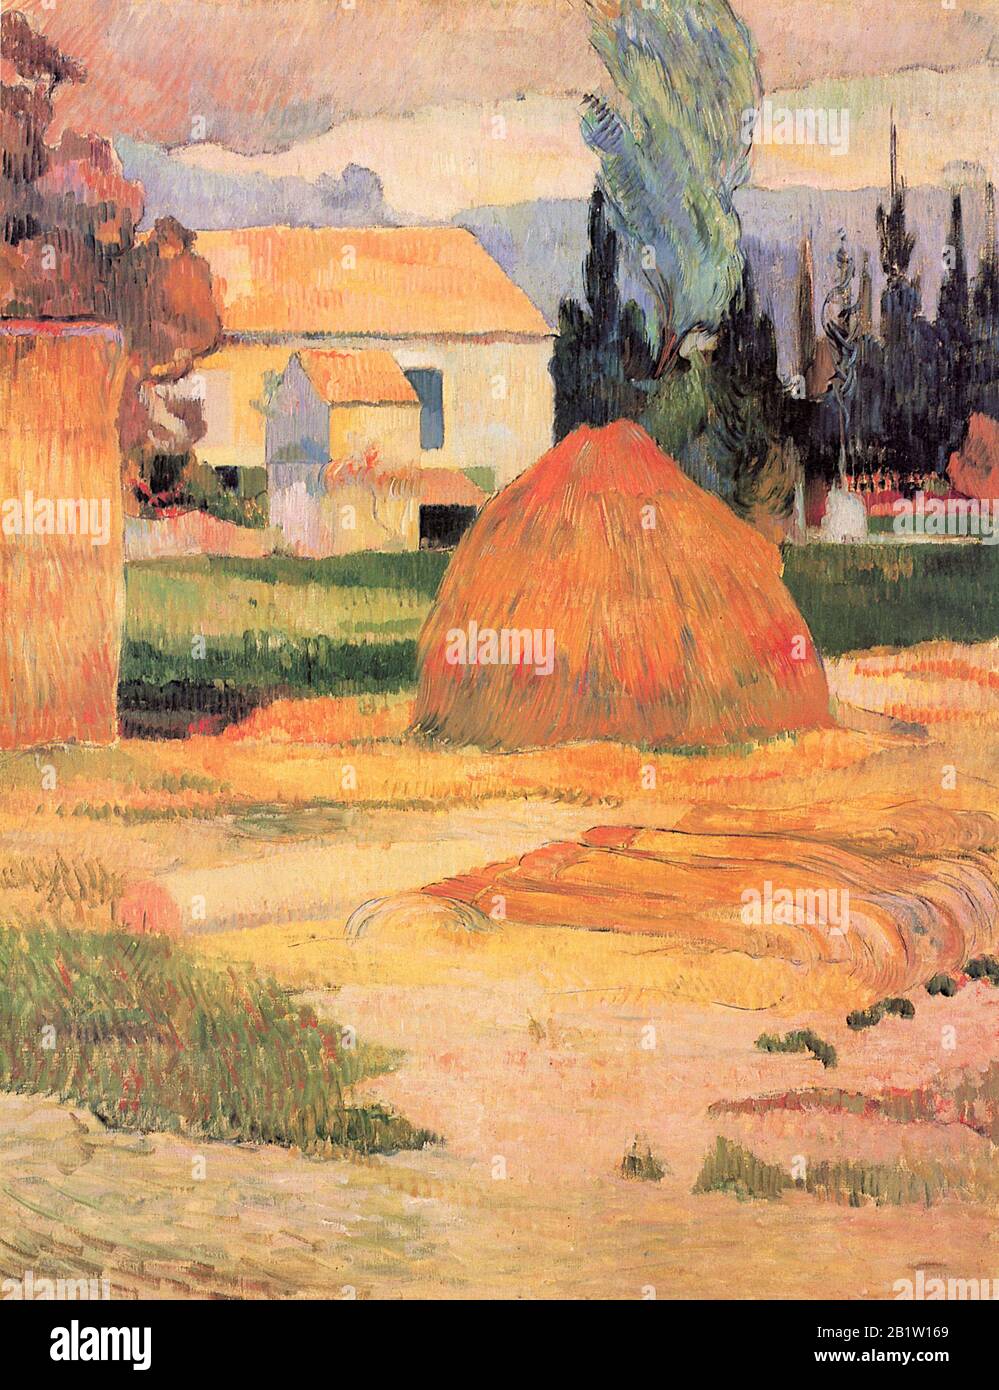 Paesaggio Vicino Arles (Ferme à Arles) (1888) 19th Secolo Pittura di Paul Gauguin - Immagine Ad Altissima risoluzione e qualità Foto Stock